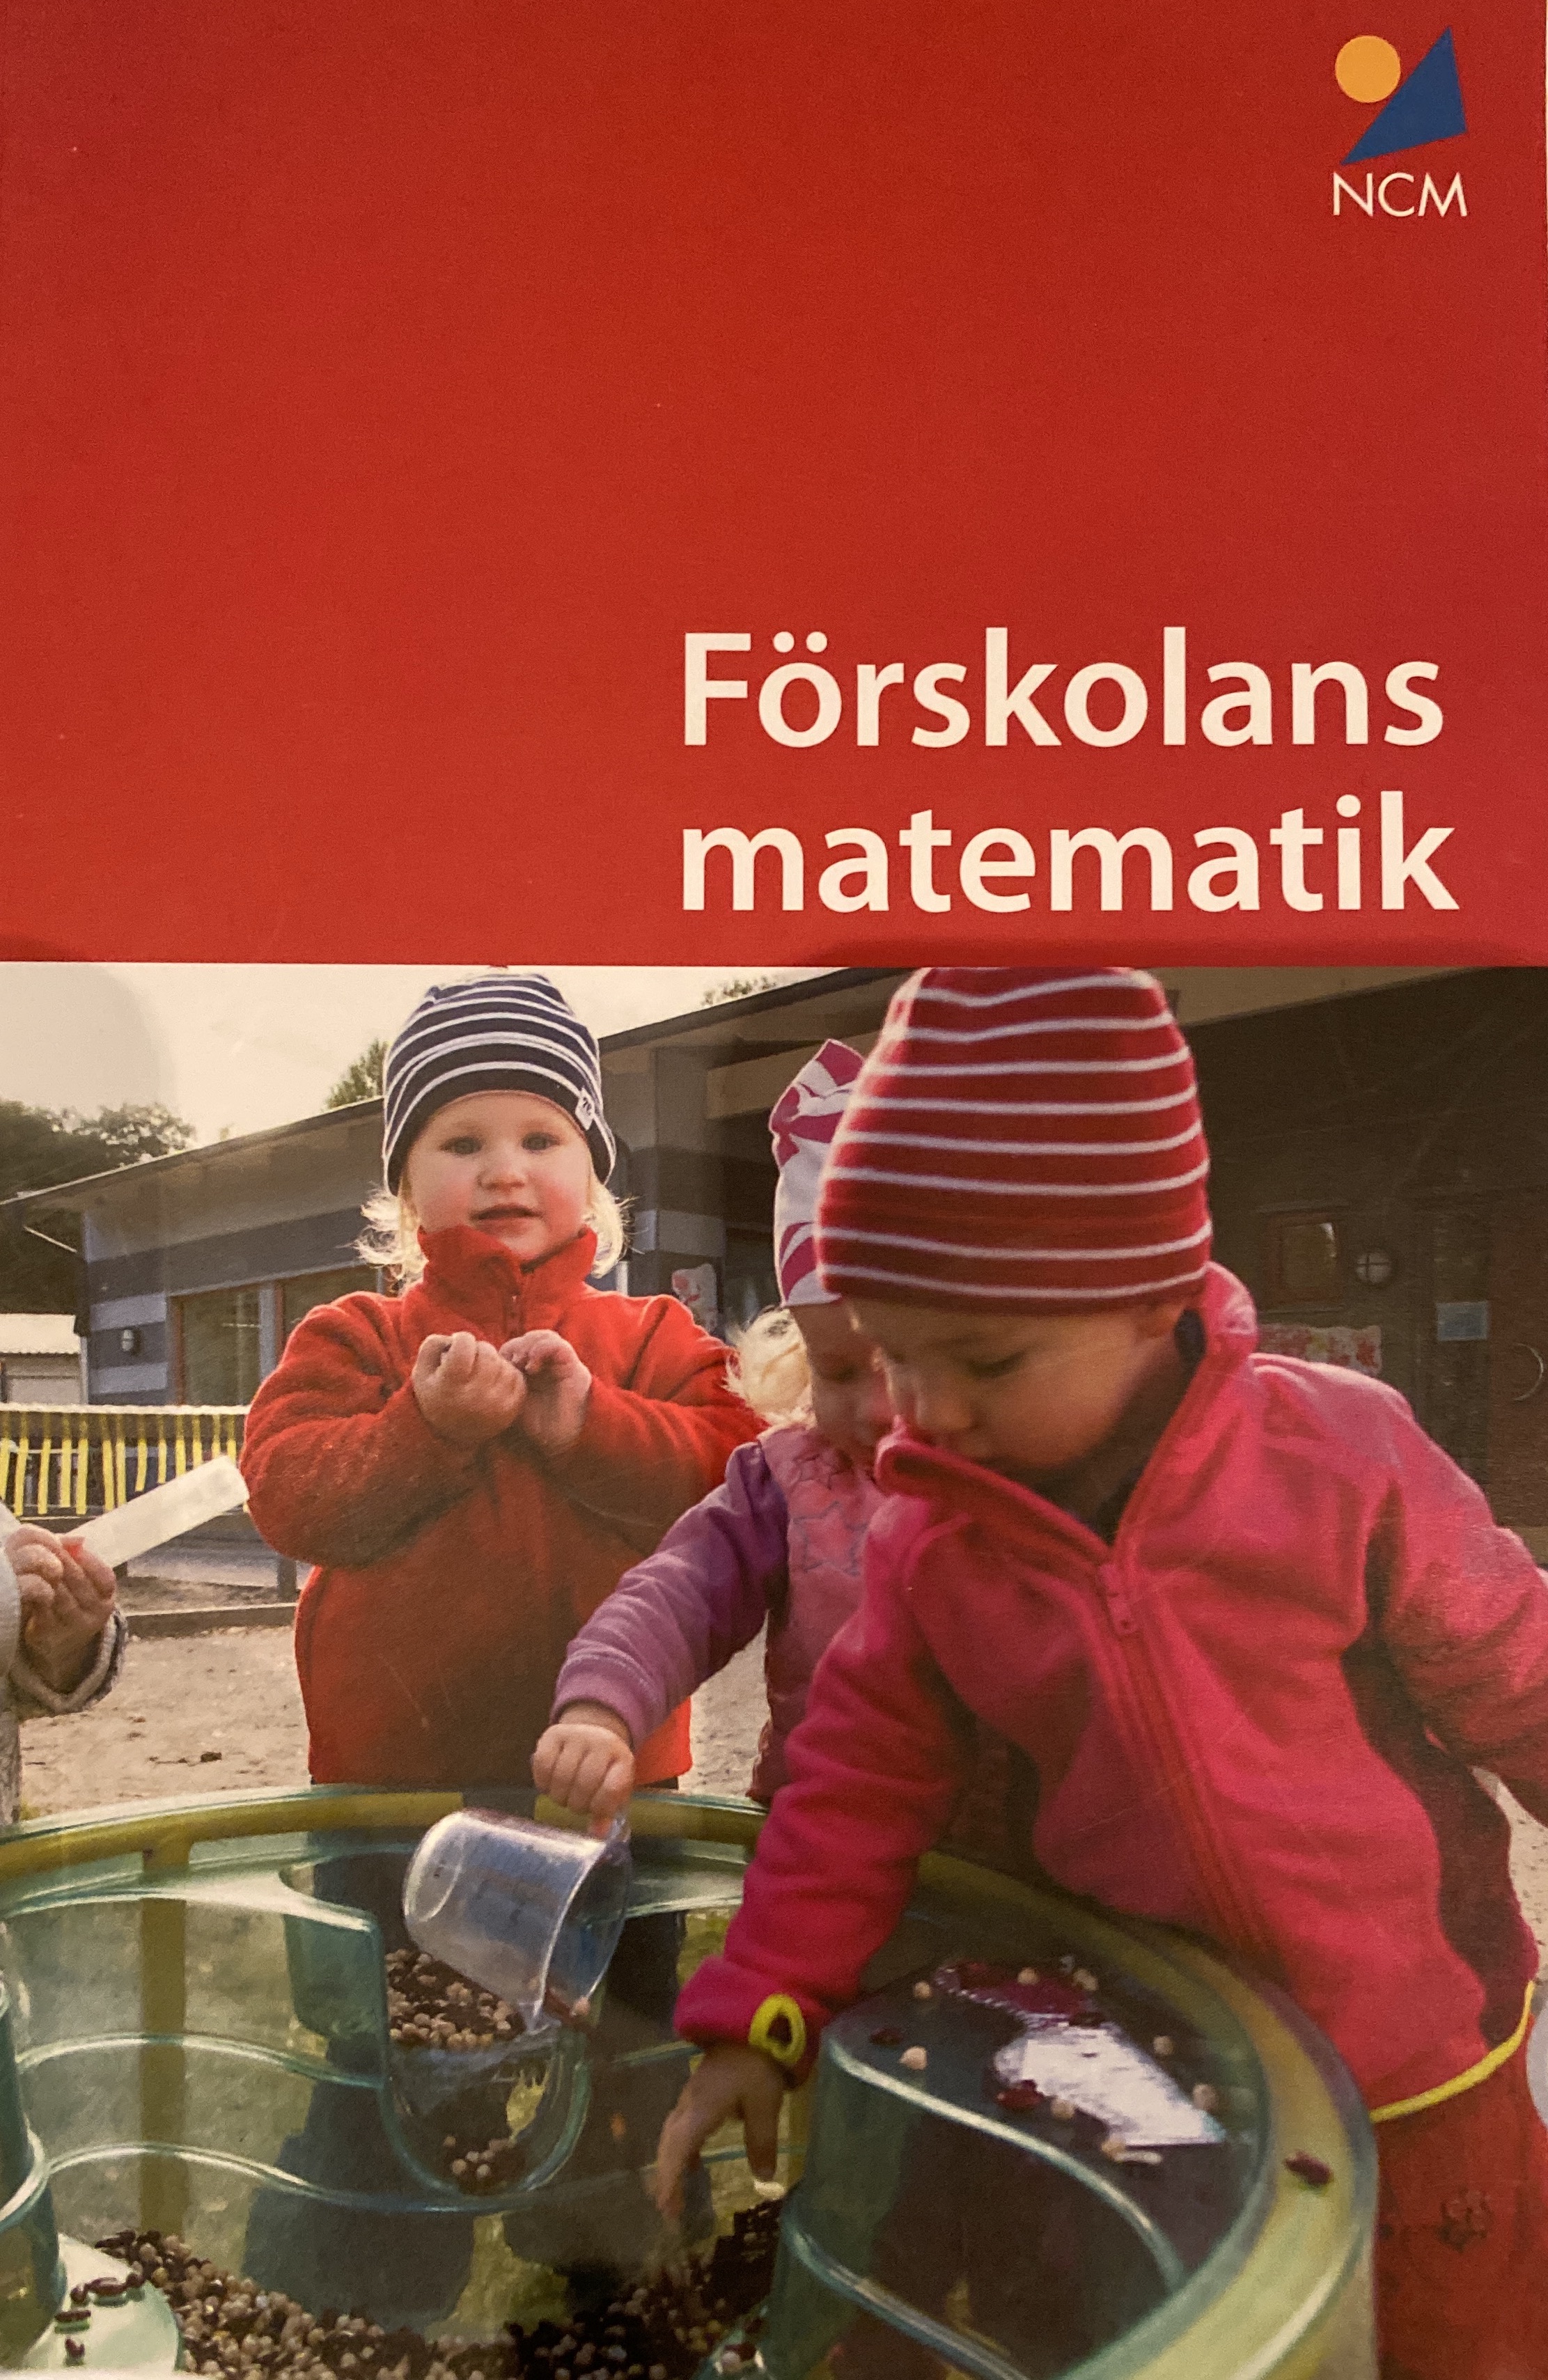 Förskolans matematik; Carl Johan Flognman, Ola Helenius, Peter Nyström, Rose-Marie Wikström, Nationellt centrum för matematikutbildning; 2019